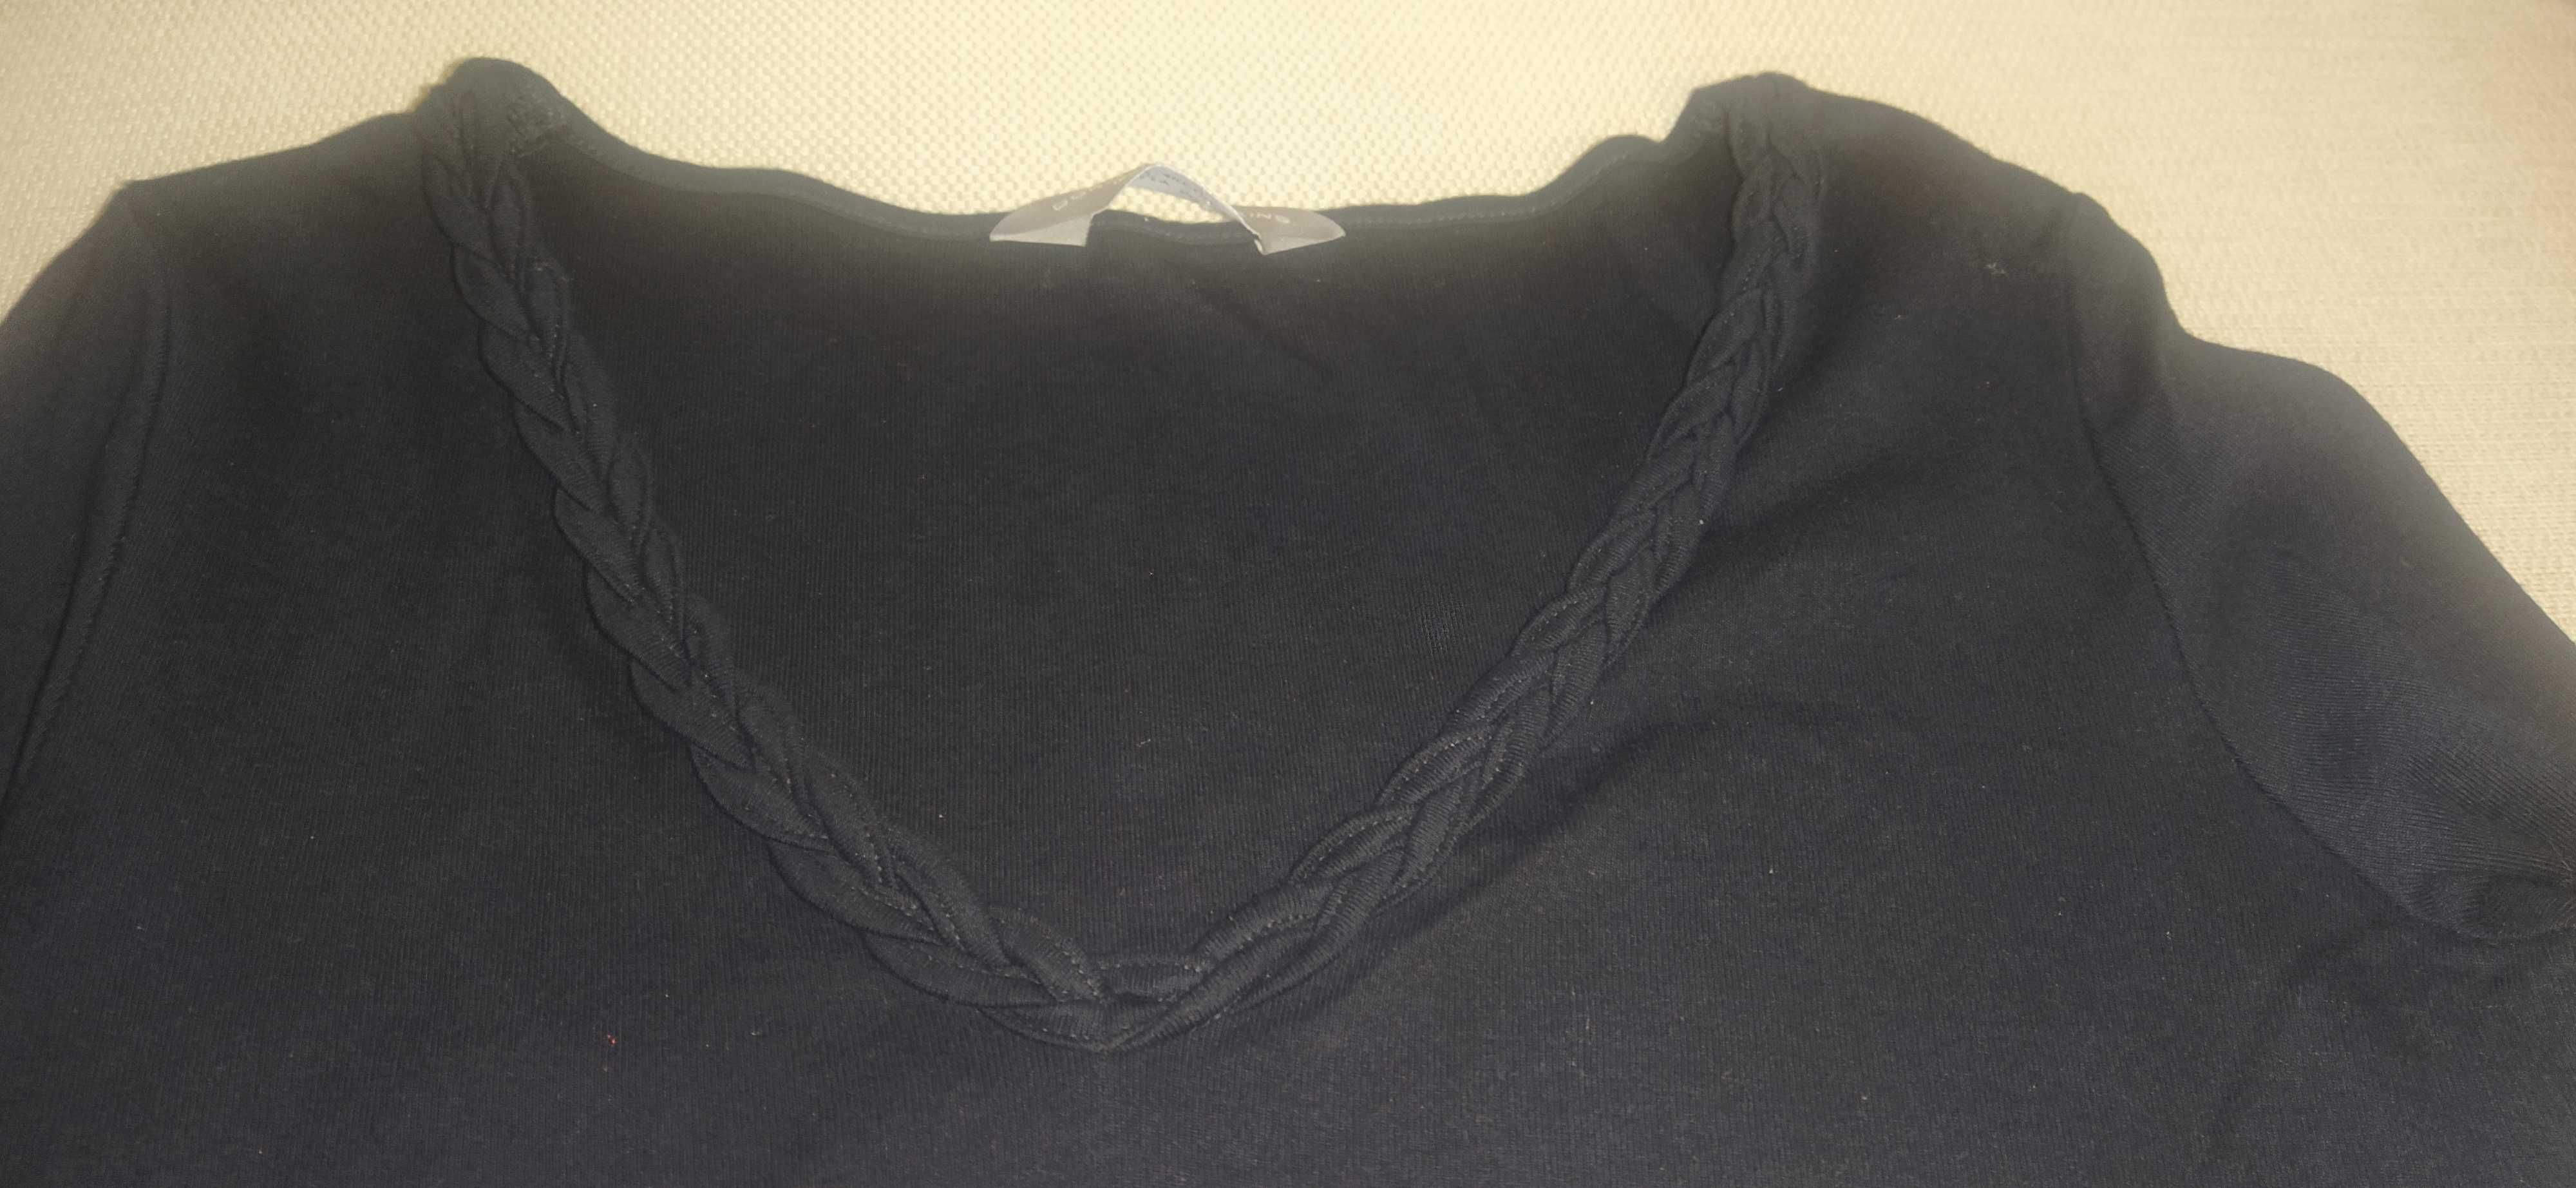 Czarna bluzka z ozdobnym warkoczem przy dekolcie rozm. 40